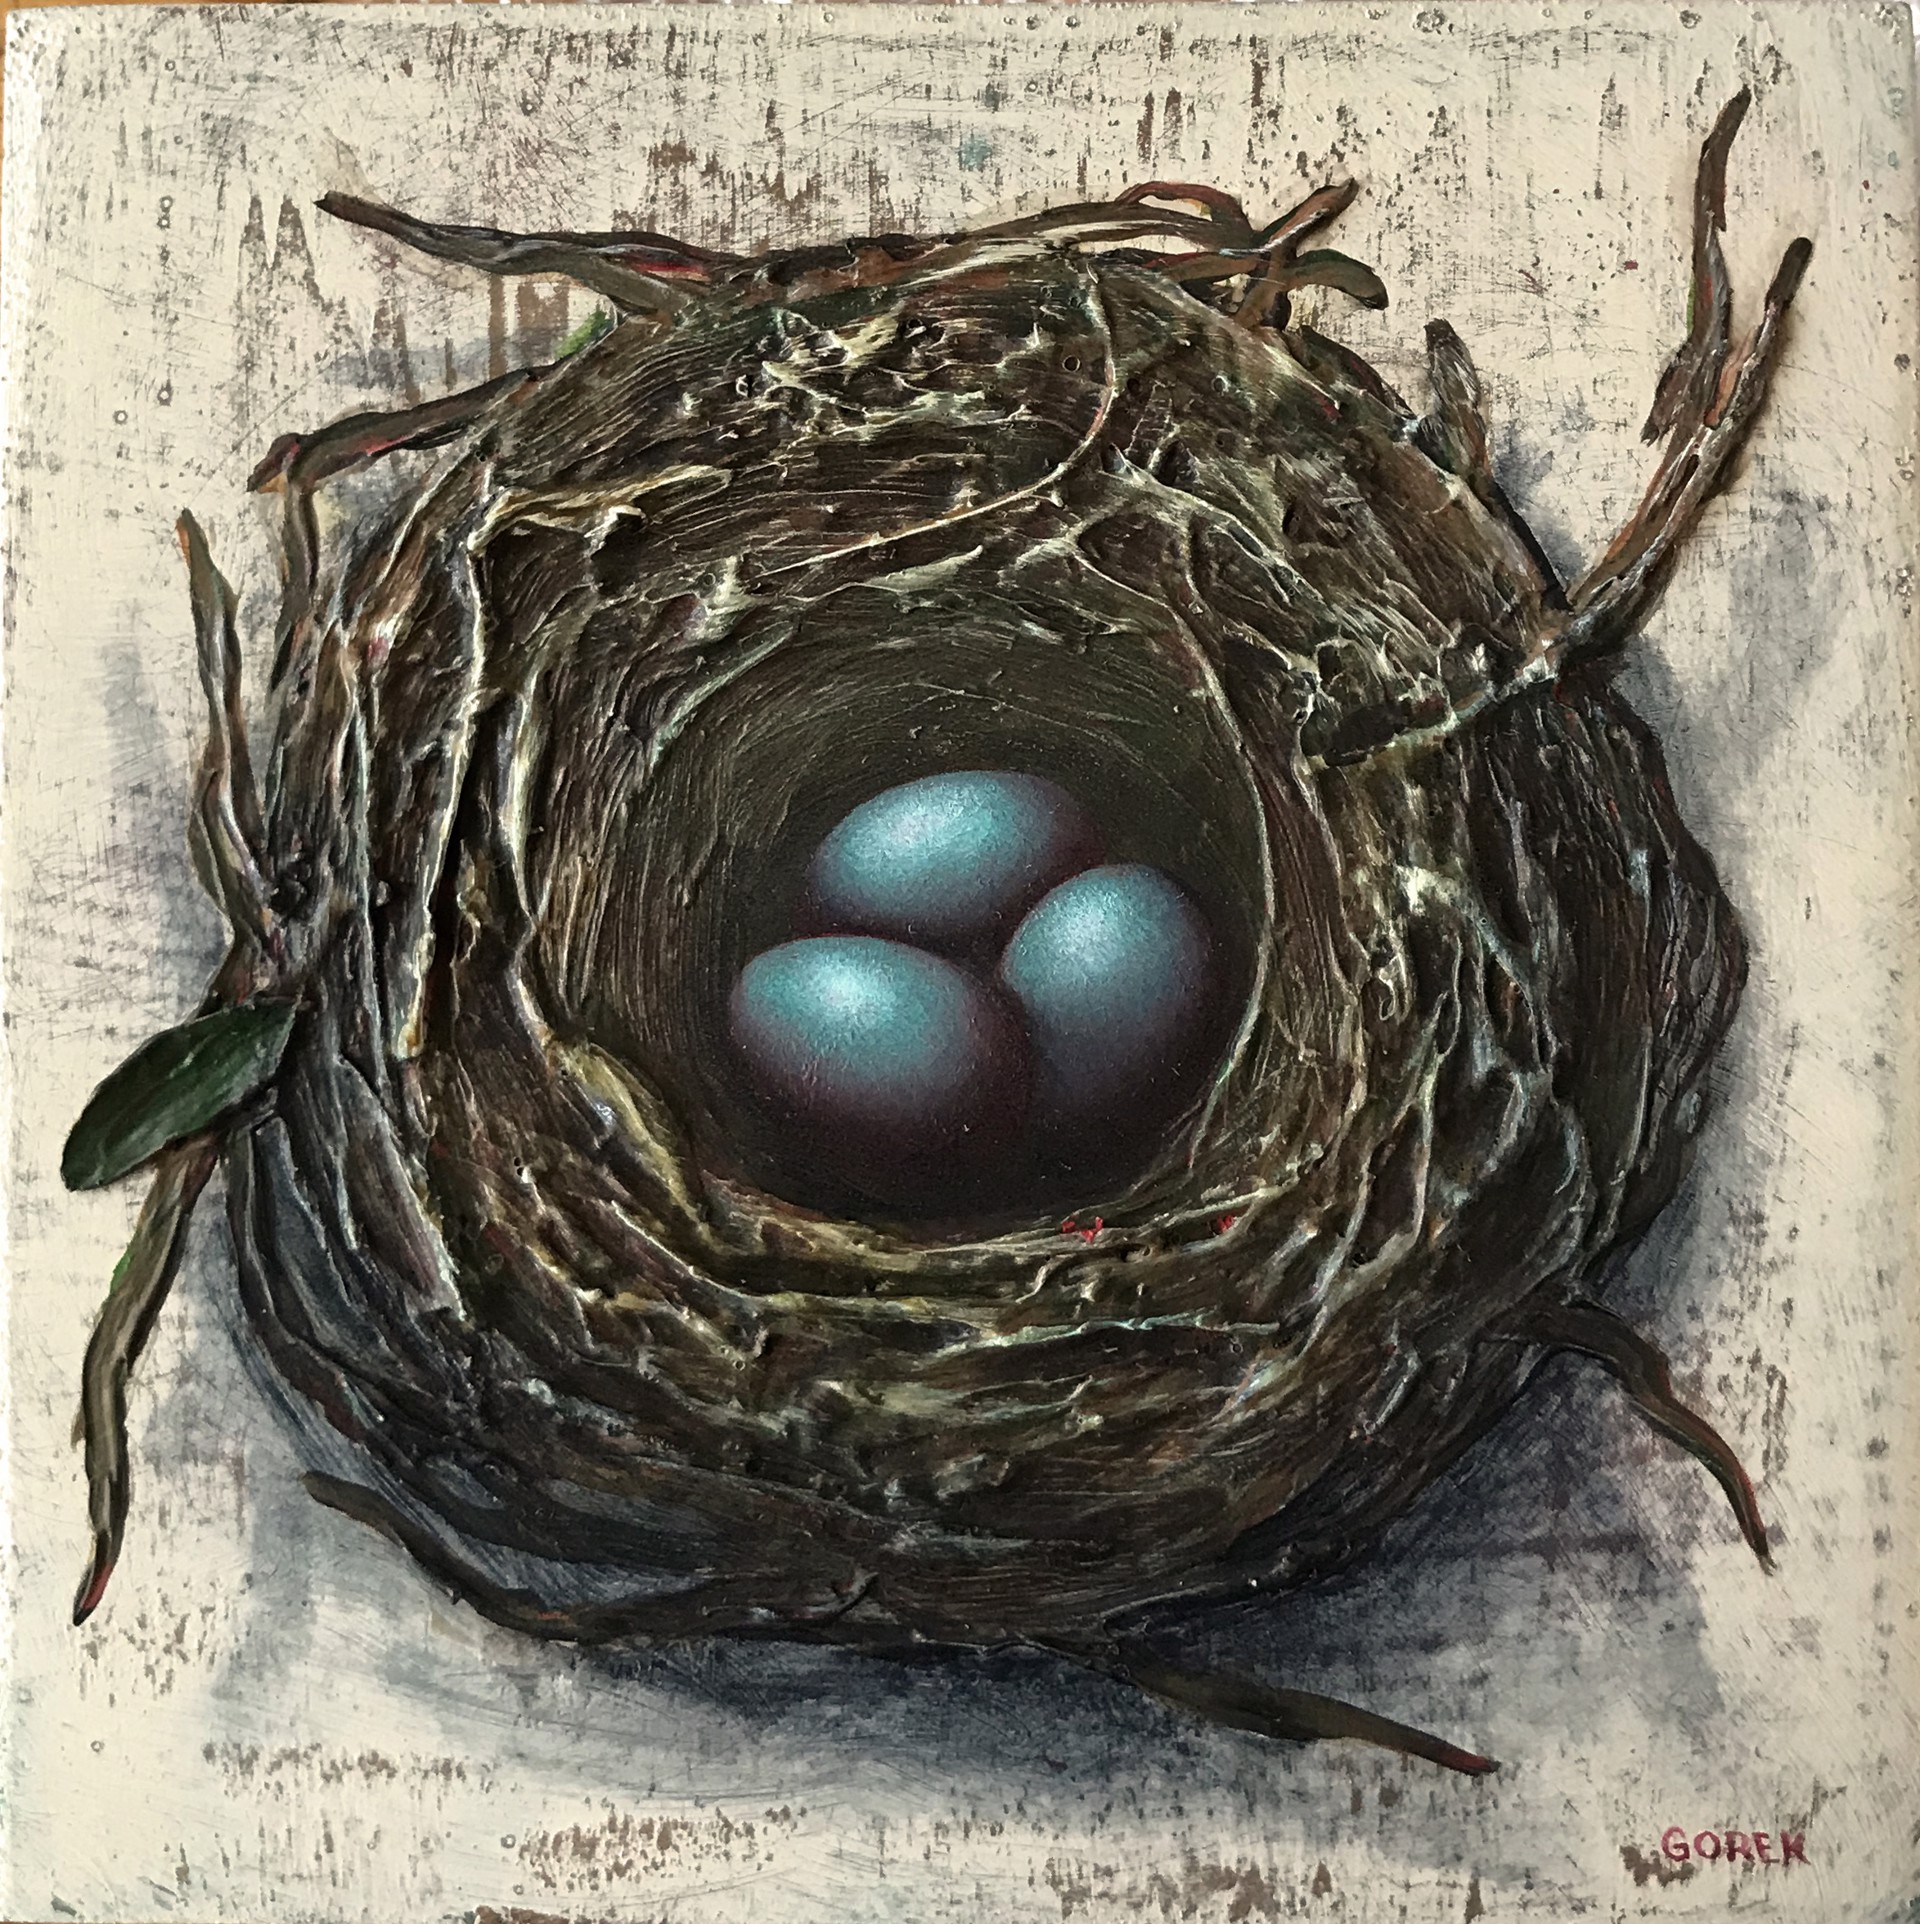 Bird's Nest, 3 Eggs by Thane Gorek